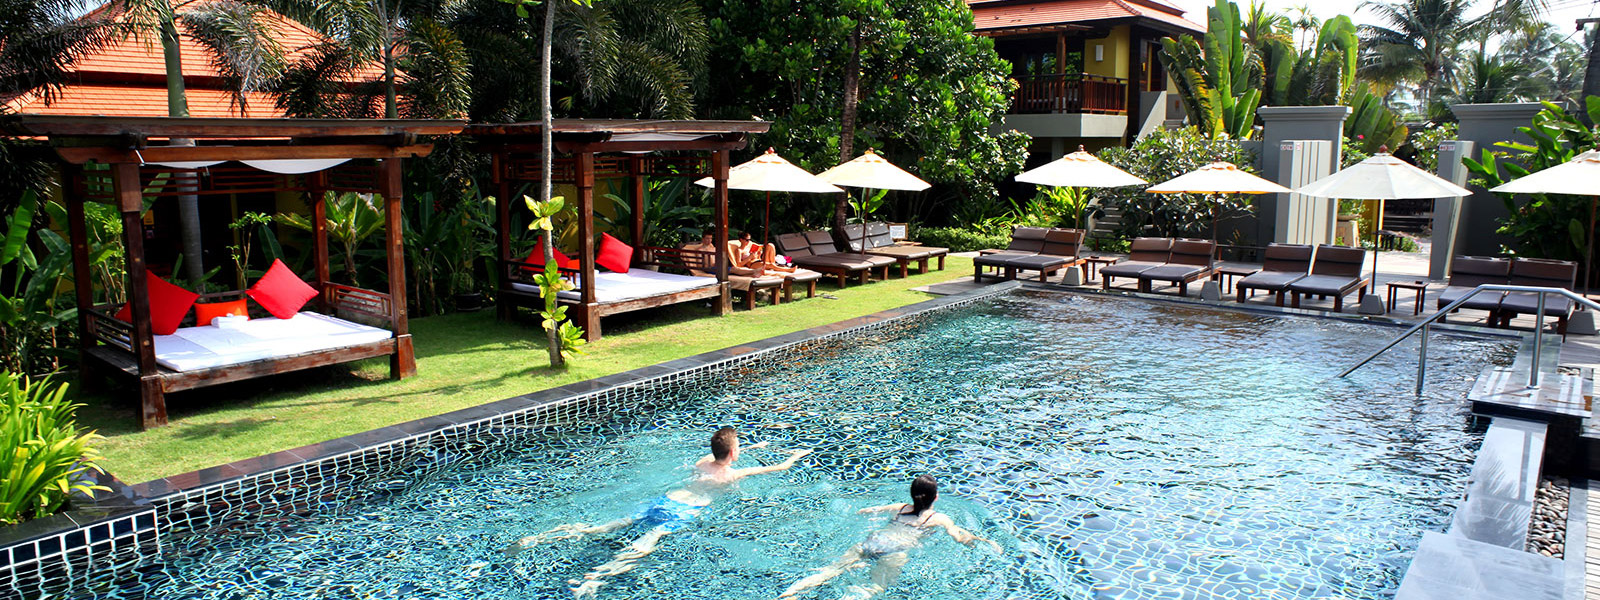 Chongfah Resort Khao Lak - Services & Facilities